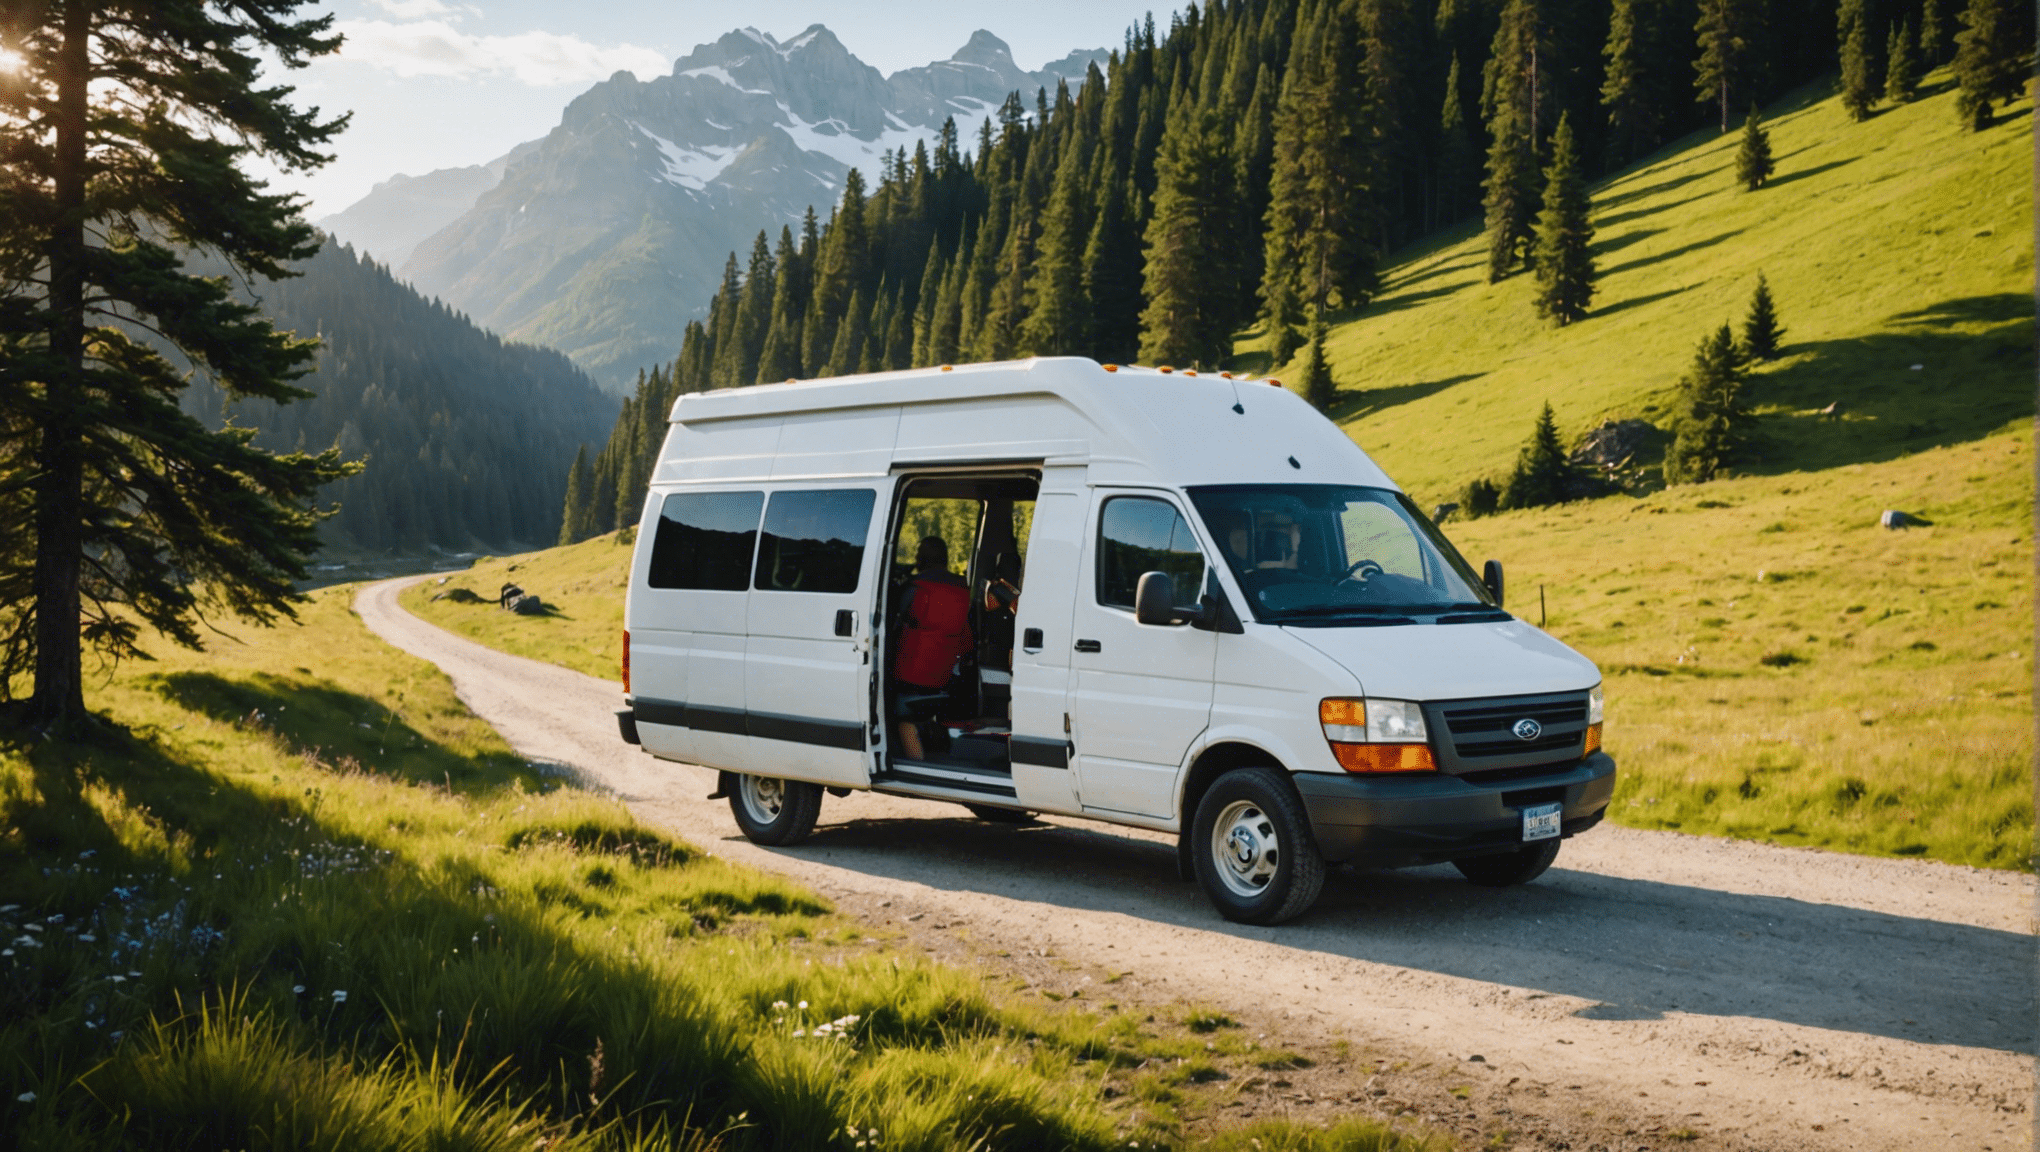 Entdecken Sie unsere Tipps für ein unvergessliches Abenteuer auf Reisen in einem Van. Praktische Ratschläge, inspirierende Reiserouten und Tipps für ein unvergessliches Erlebnis.